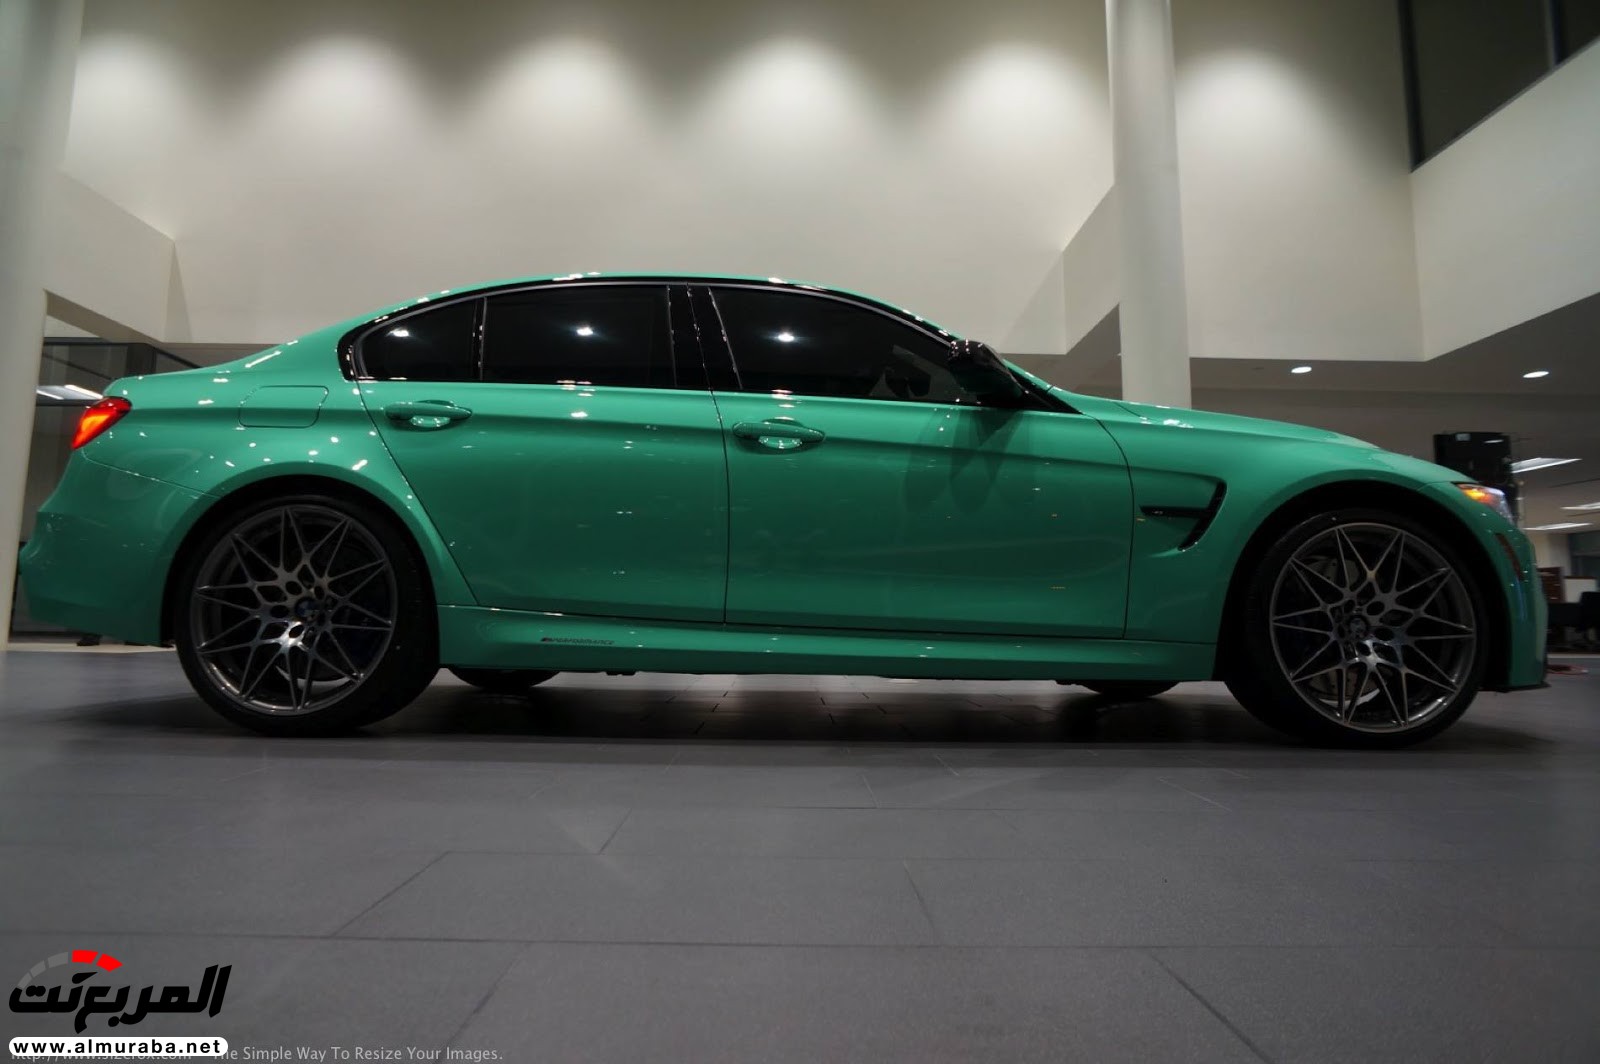 "بالصور" شاهد "بي إم دبليو" F80 M3 الخاصة بطلاء النعناع الأخضر BMW 110